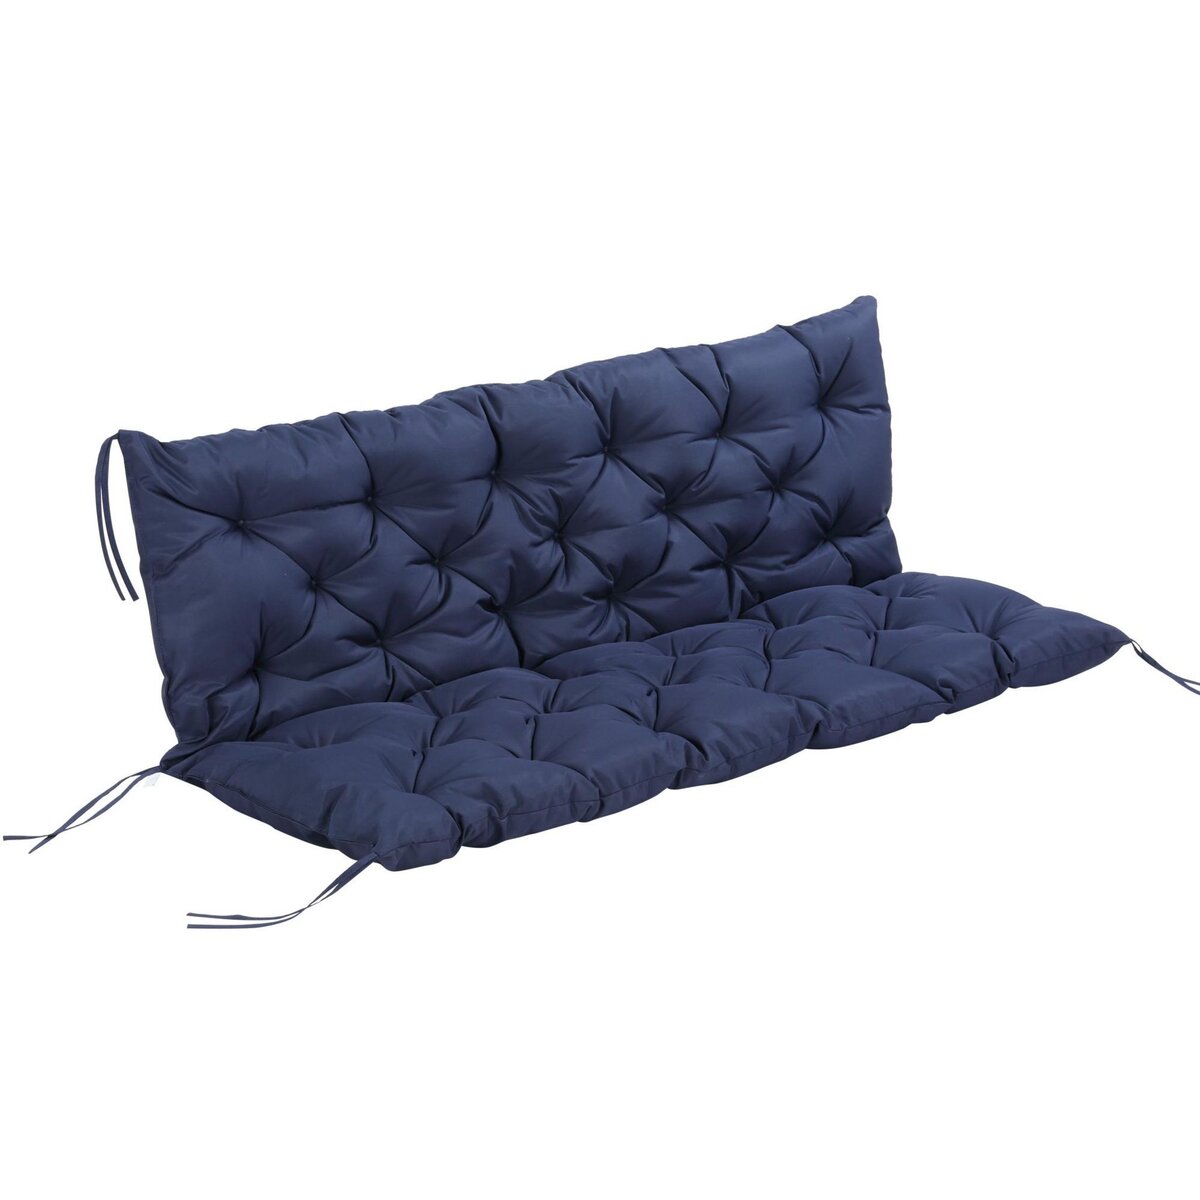 OUTSUNNY Coussin matelas assise dossier pour banc de jardin balancelle canapé 3 places grand confort 150 x 98 x 8 cm bleu